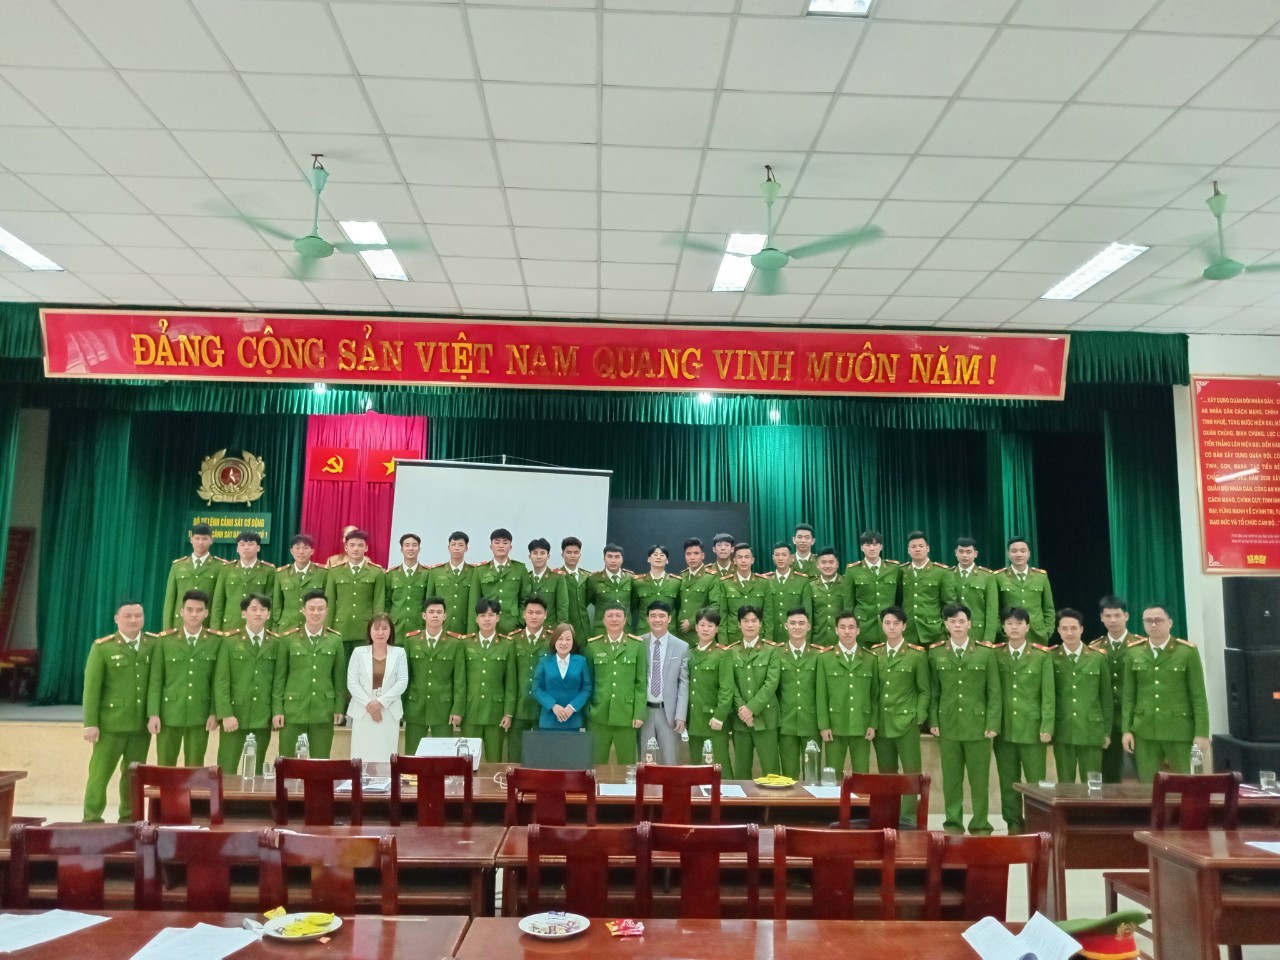 TVP Ninh Bình-Hướng nghiệp nghề cho chiến sỹ  nghĩa vụ thuộc Tiểu đoàn Cảnh sát đặc nhiệm số 1 Hà Nội